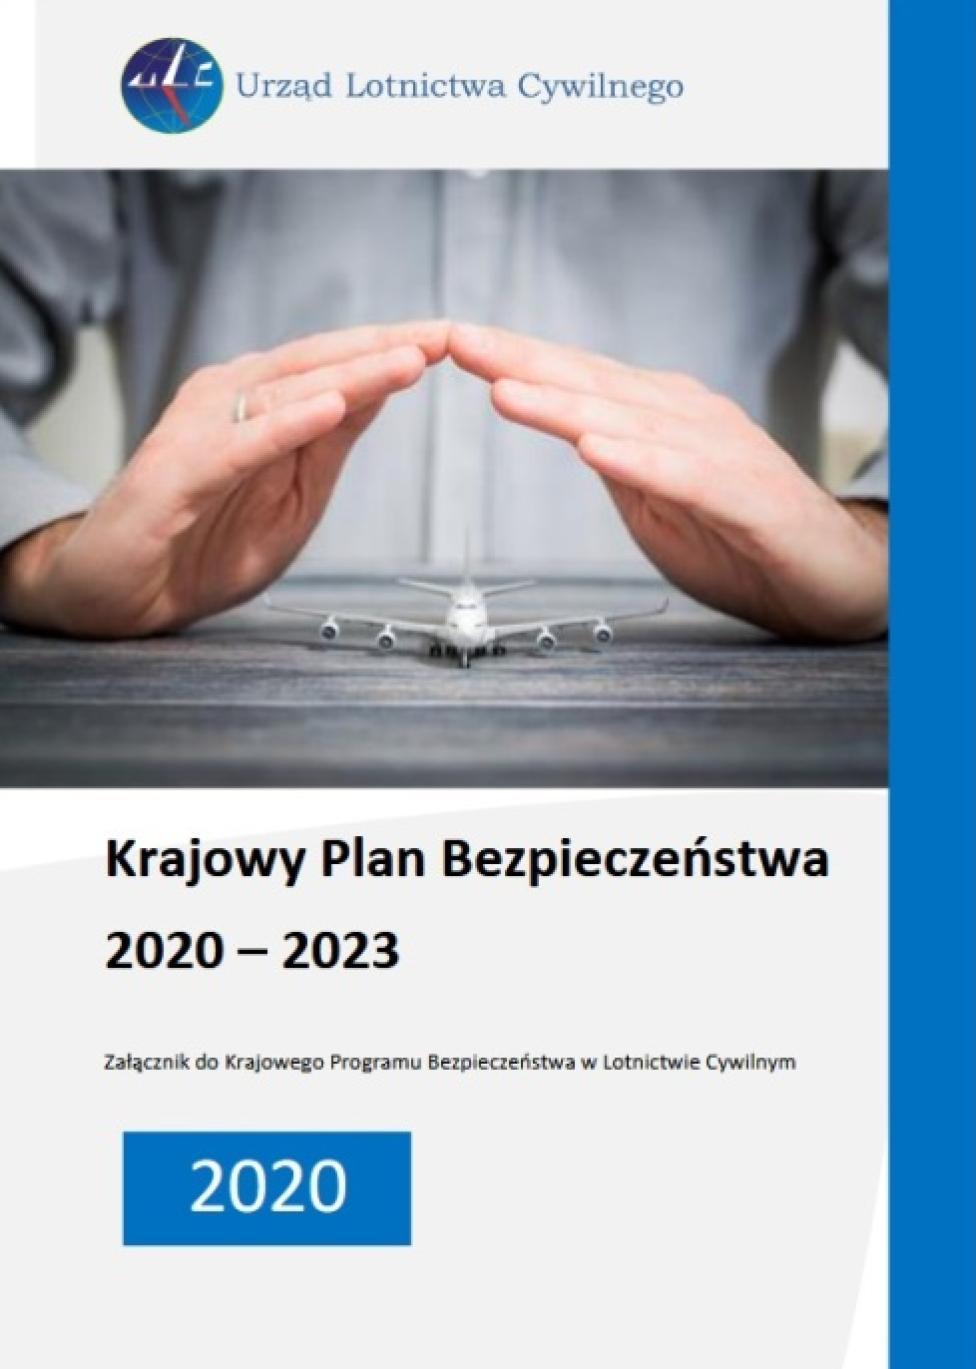 Krajowy Plan Bezpieczeństwa 2020-2023 (fot. ULC)